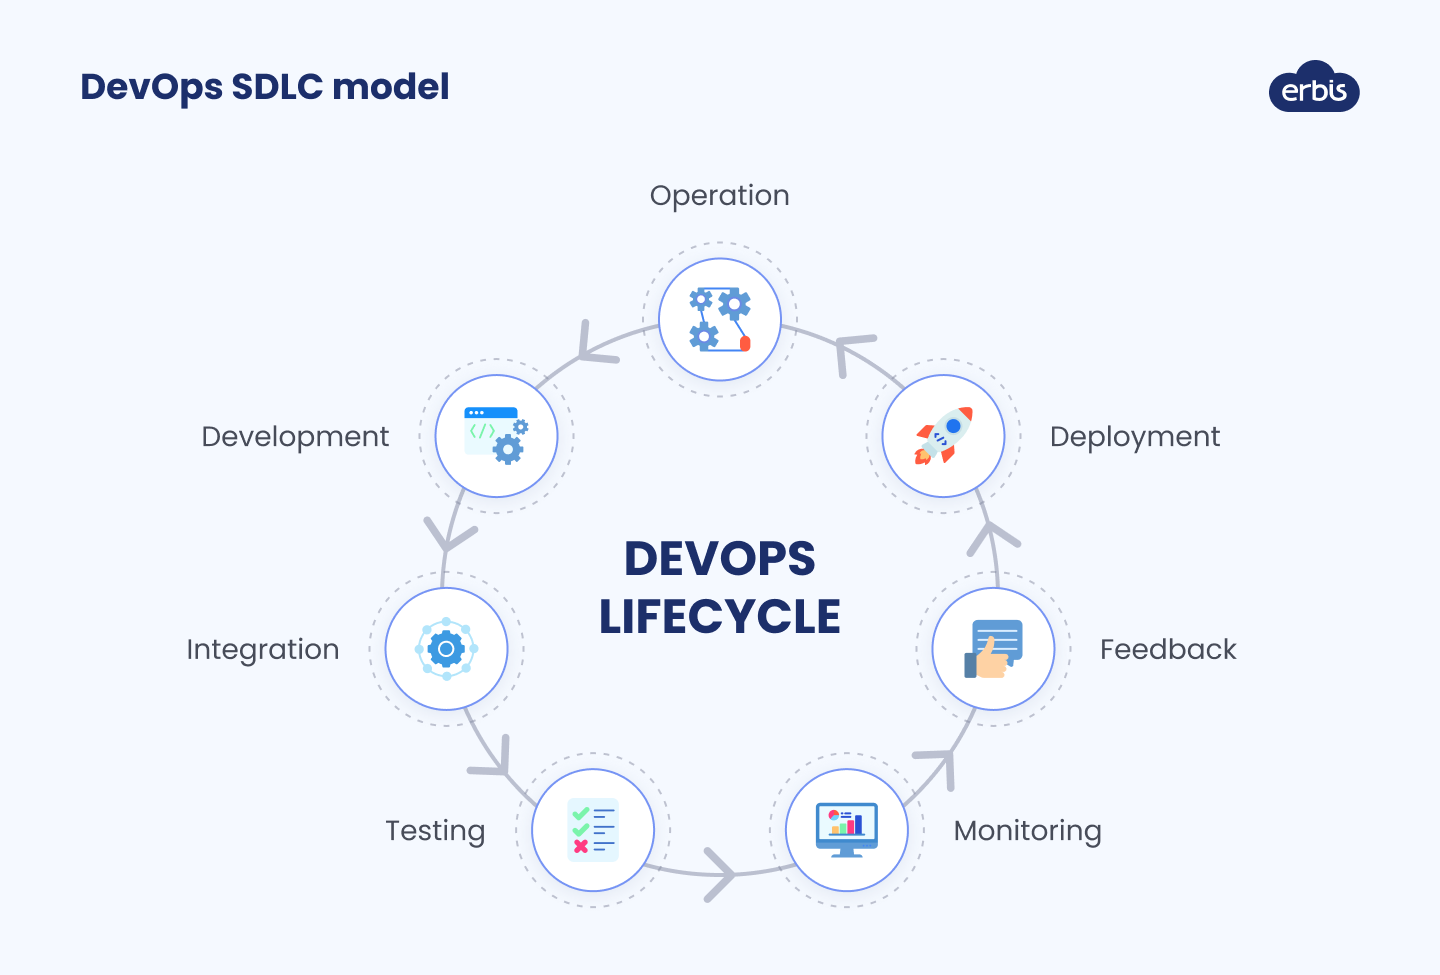 DevOps SDLC model